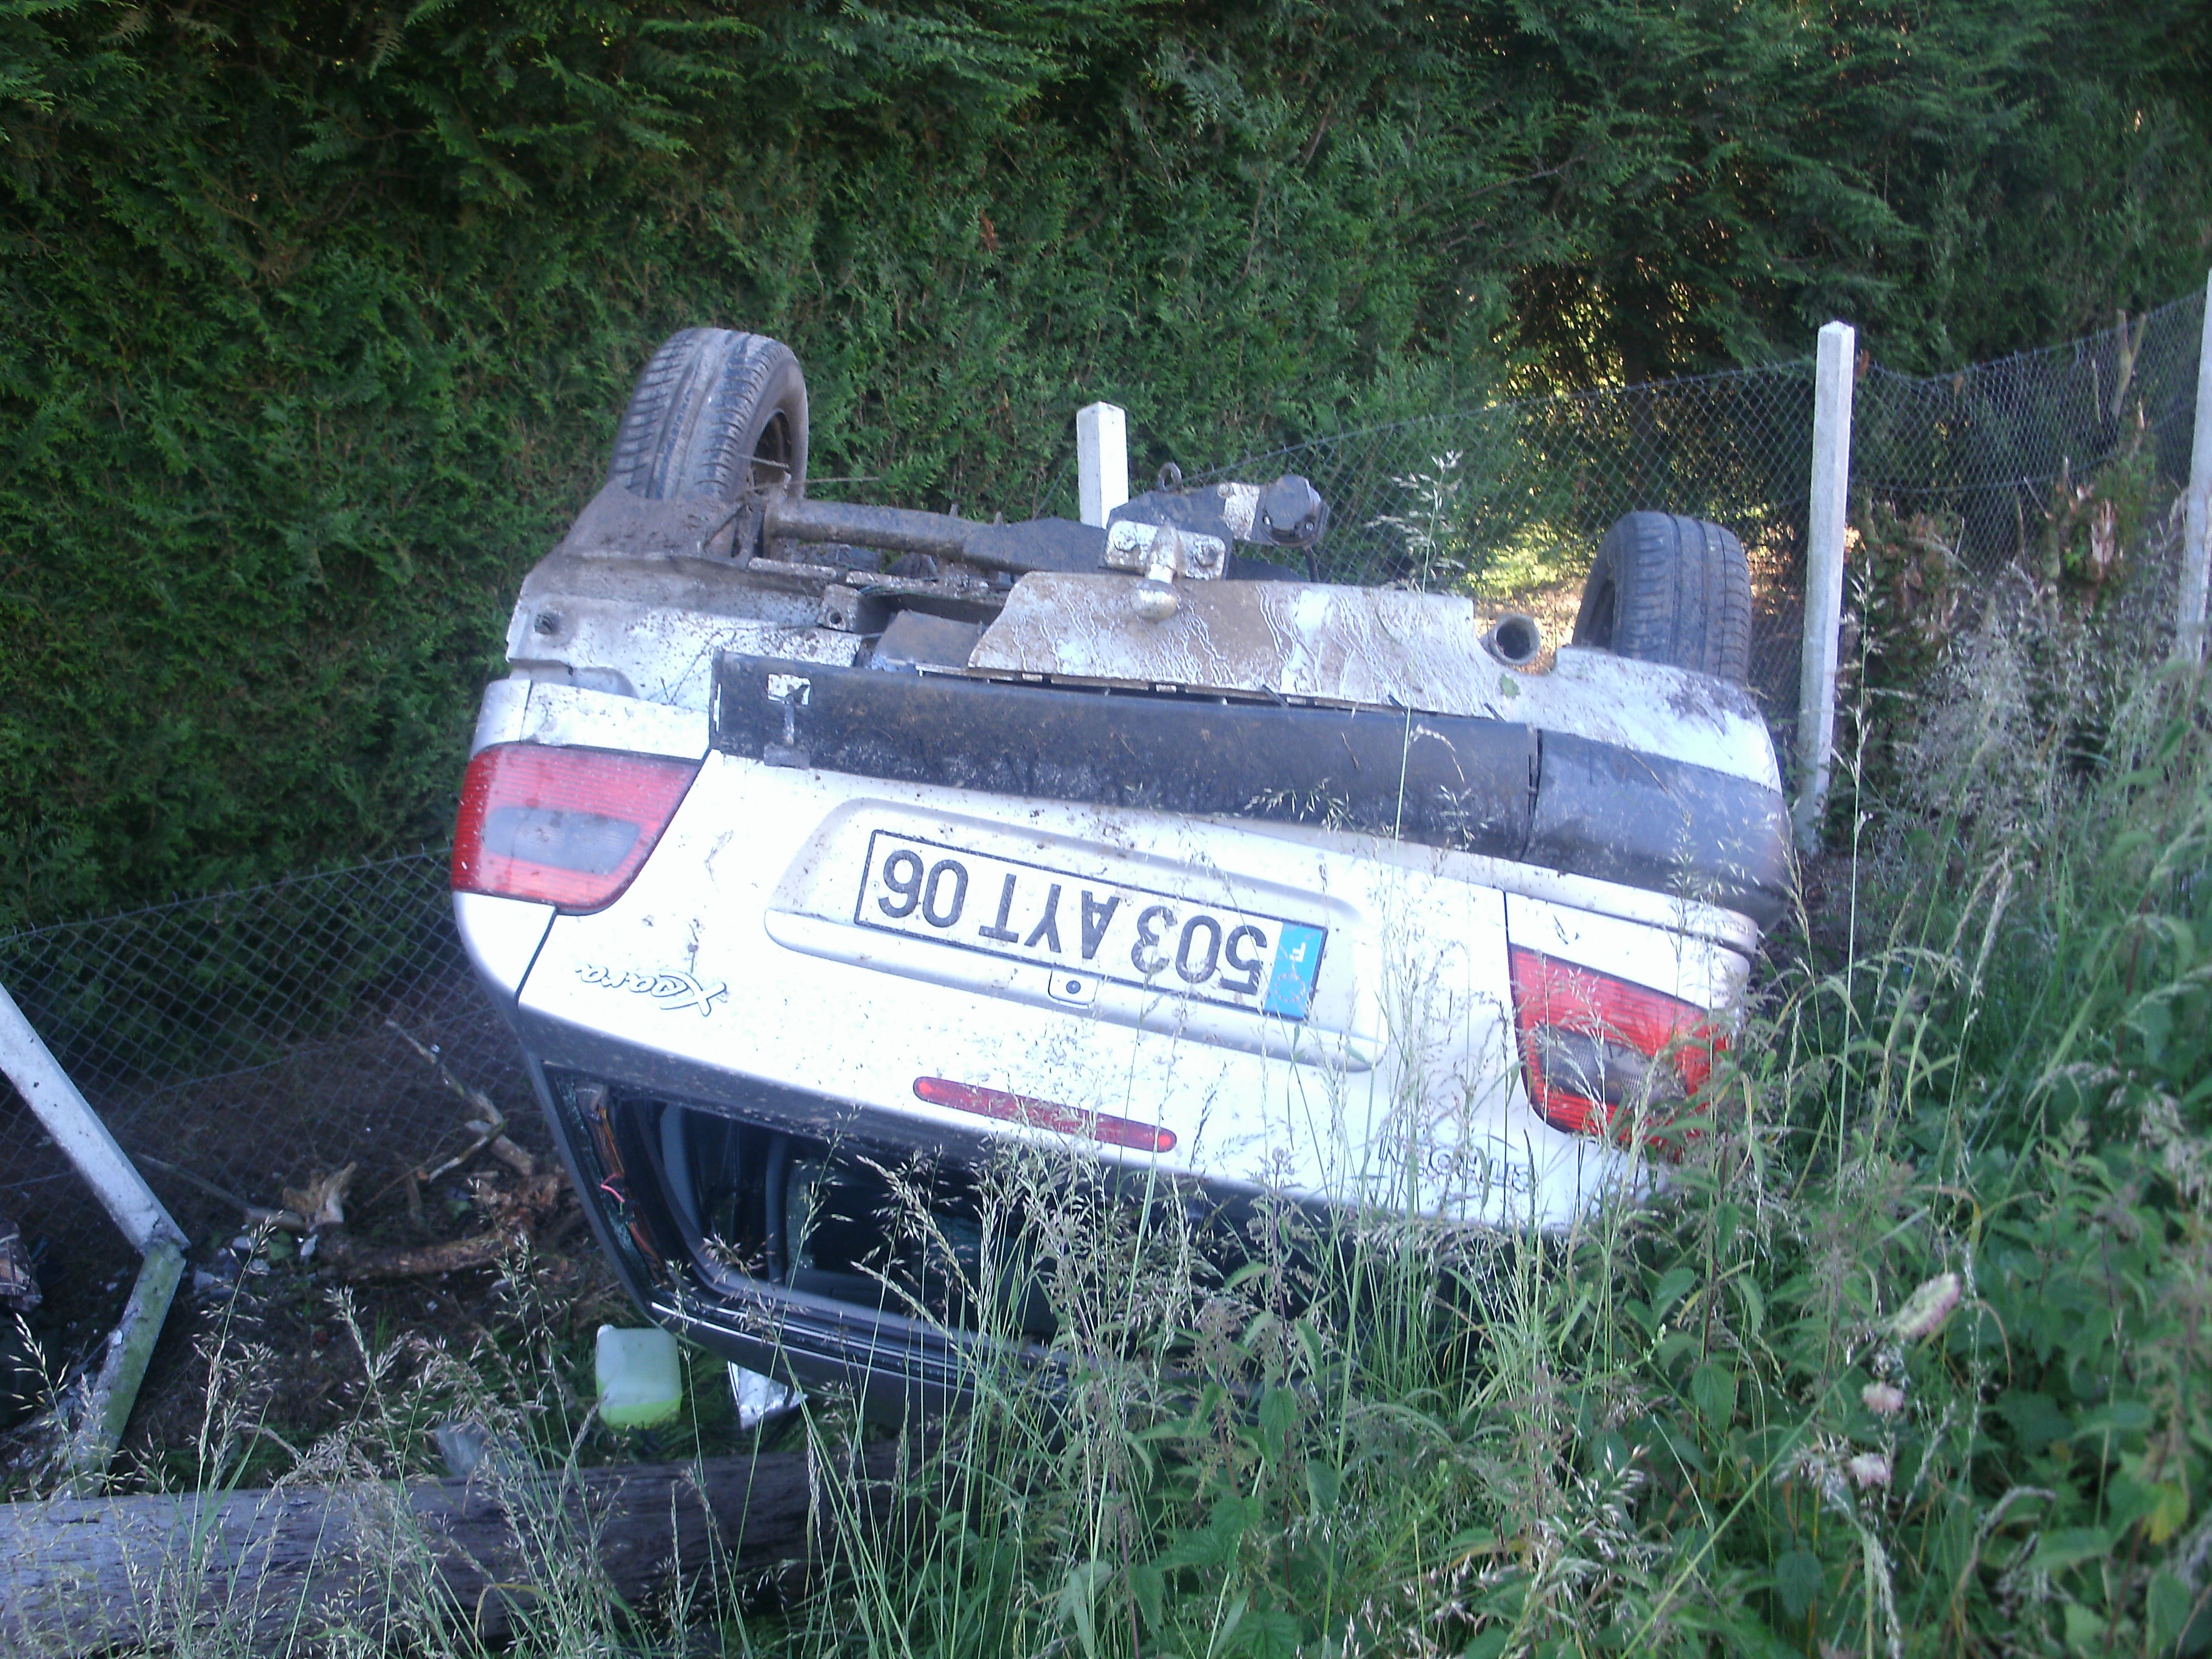 La Citroën s'est retournée dans le fossé après avoir percuté le pylône électrique (Photos DR)